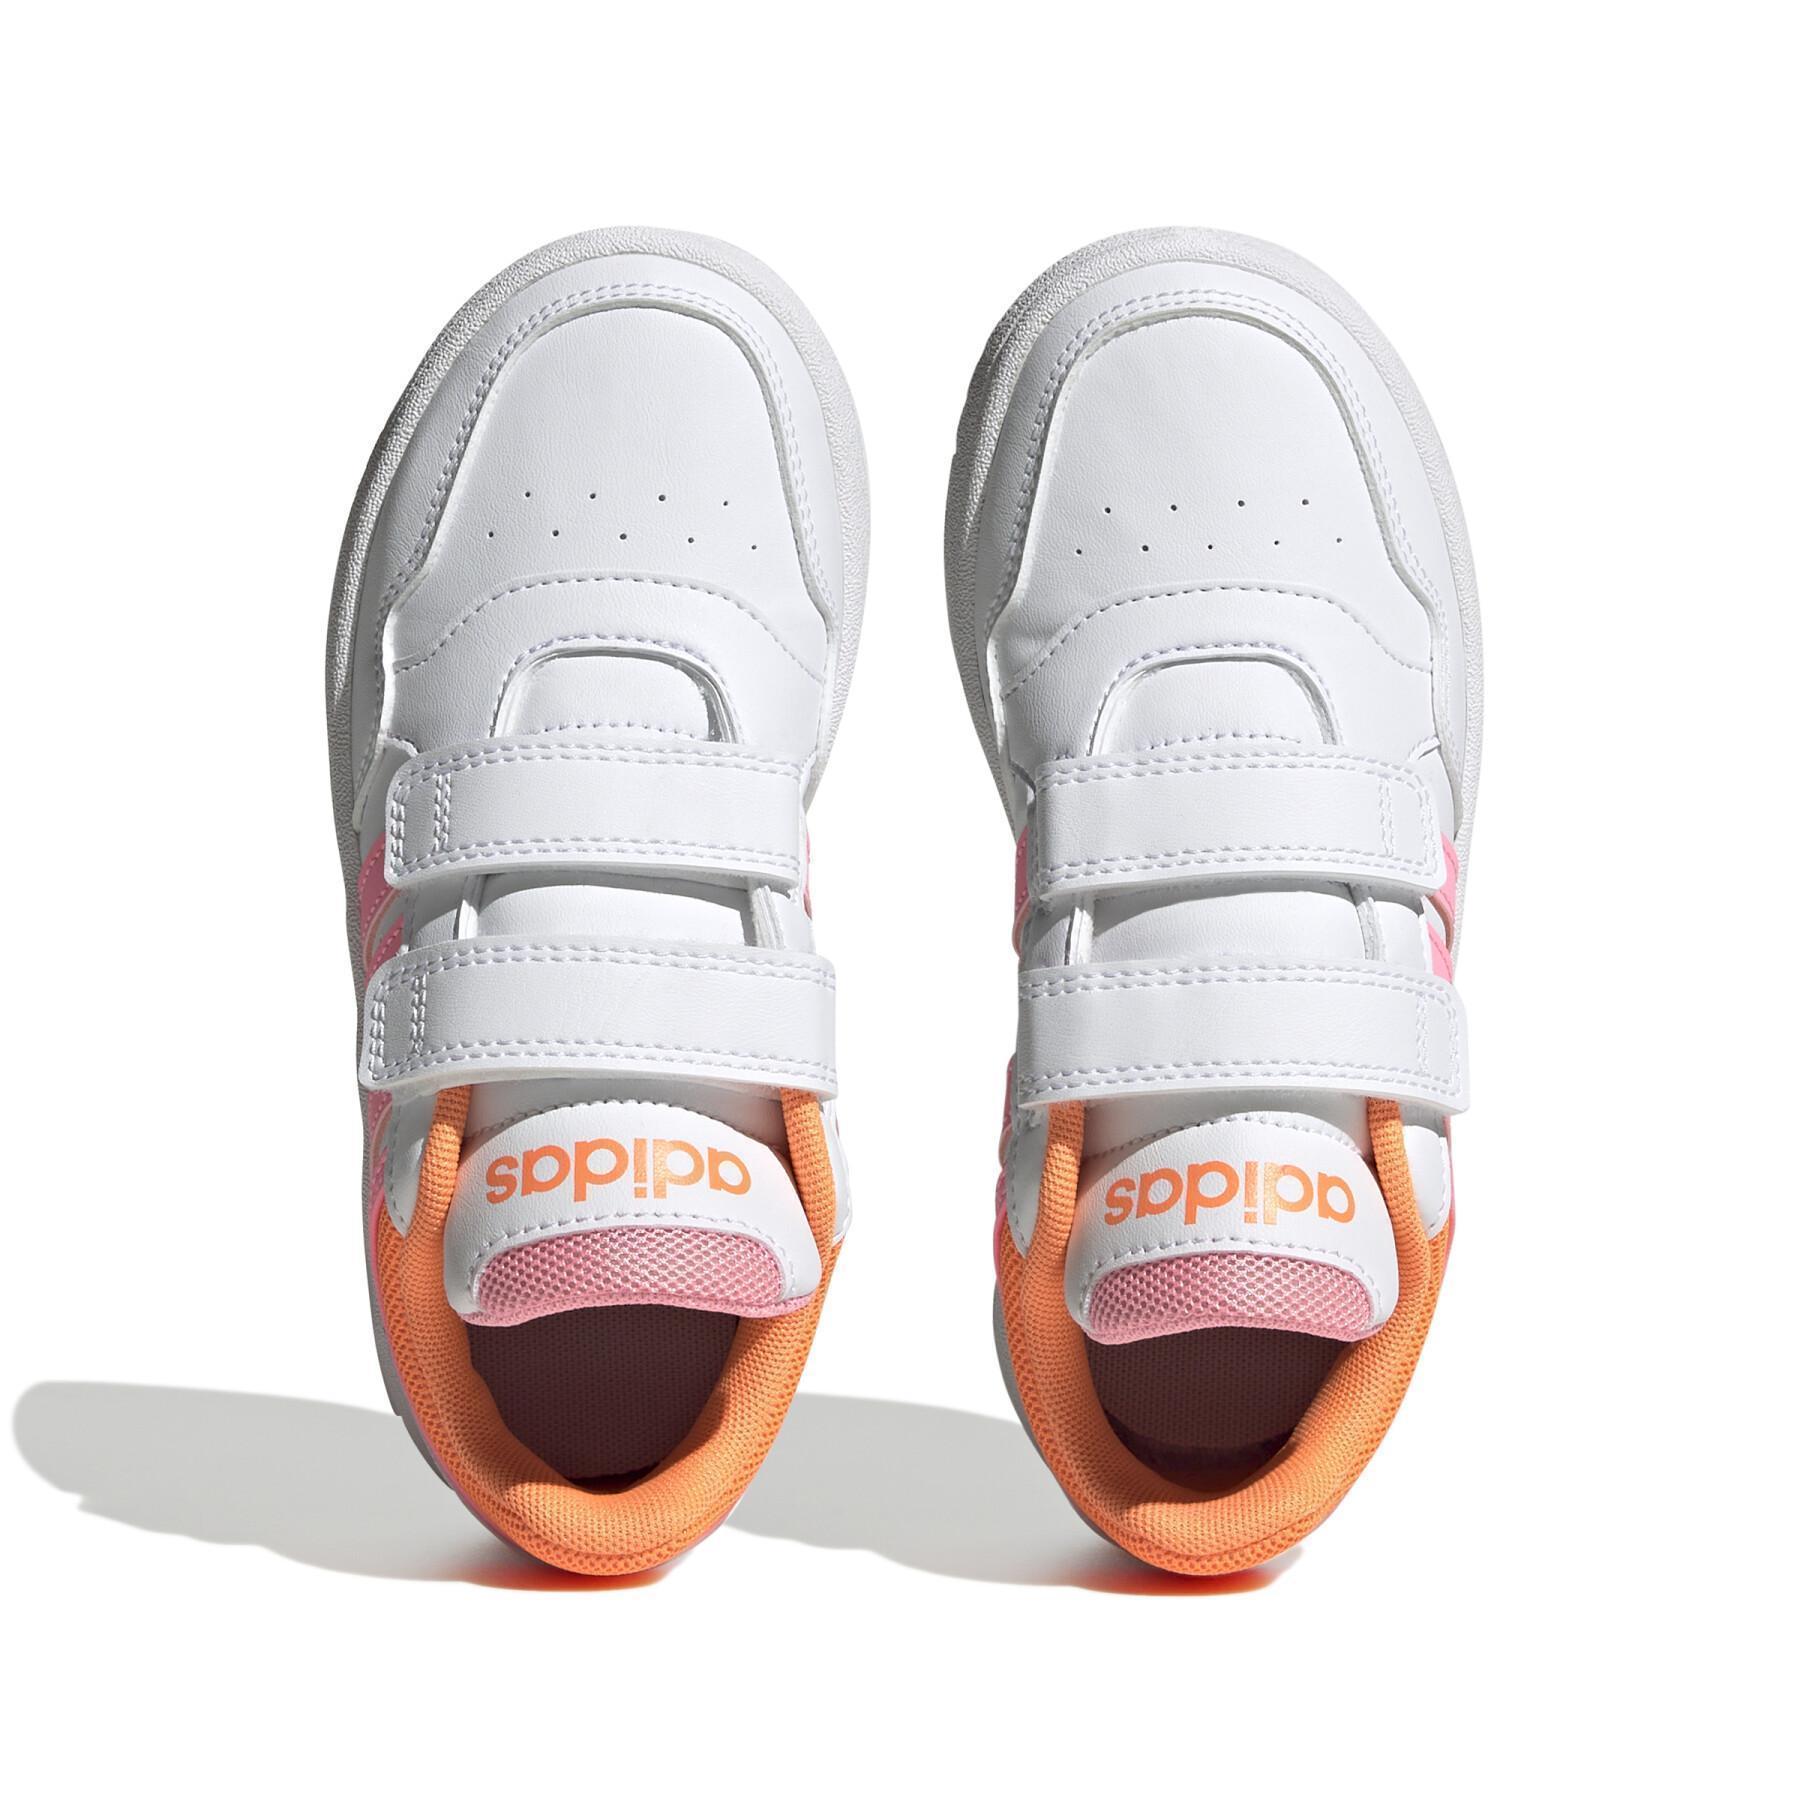 Children's sneakers adidas Hoops